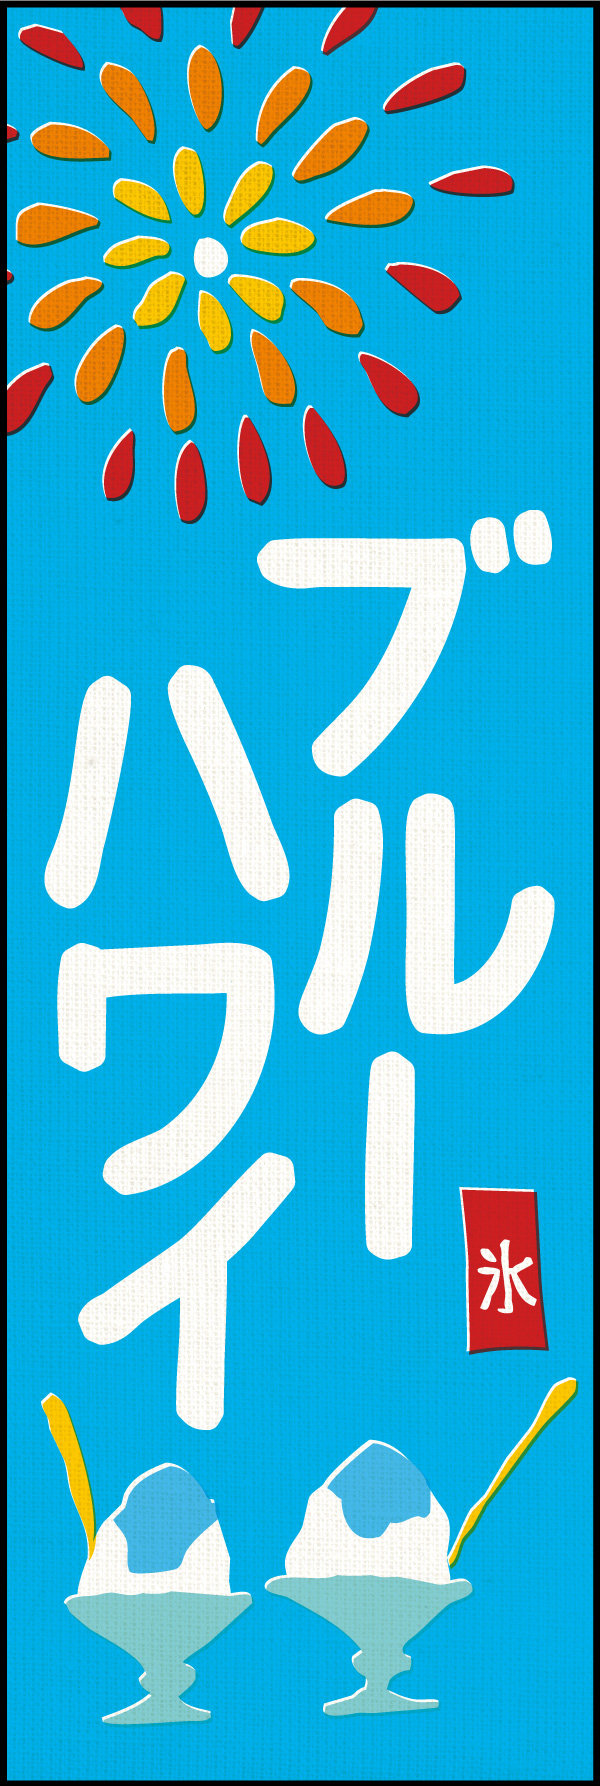 ブルーハワイ 01 「かき氷 ブルーハワイ」の幟です。懐かしい夏休みを思い出すようなデザインに仕上げました。(Y.M)